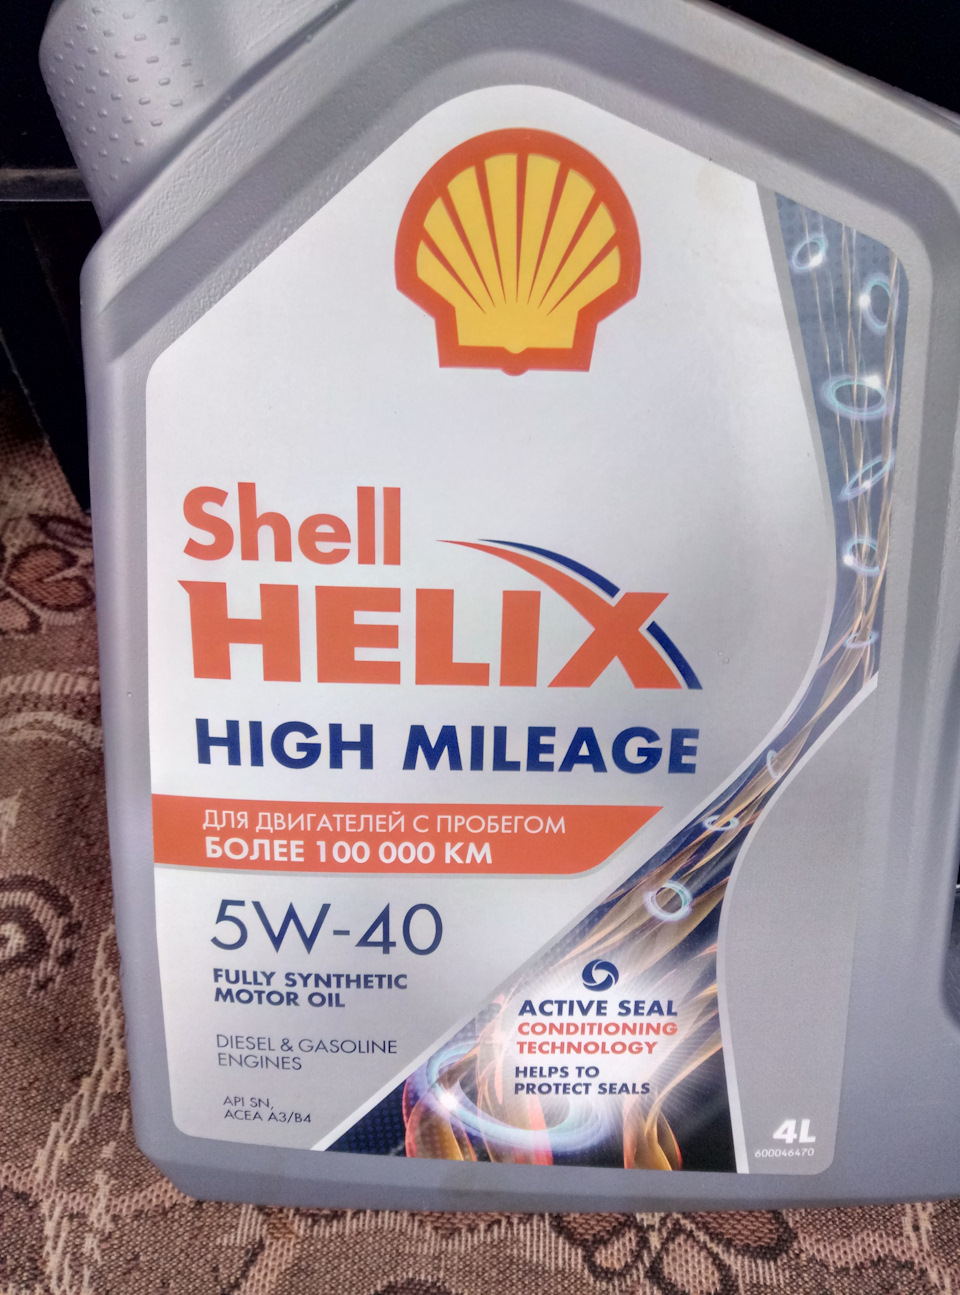 Моторное масло для двигателей с большим пробегом. Shell Helix High Mileage 5w-40. Shell Helix High Mileage 5w-40 синтетическое 4 л. Масло Шелл Хеликс 5w40 High Mileage допуск. Шелл Хеликс для двигателей с пробегом более 100000.